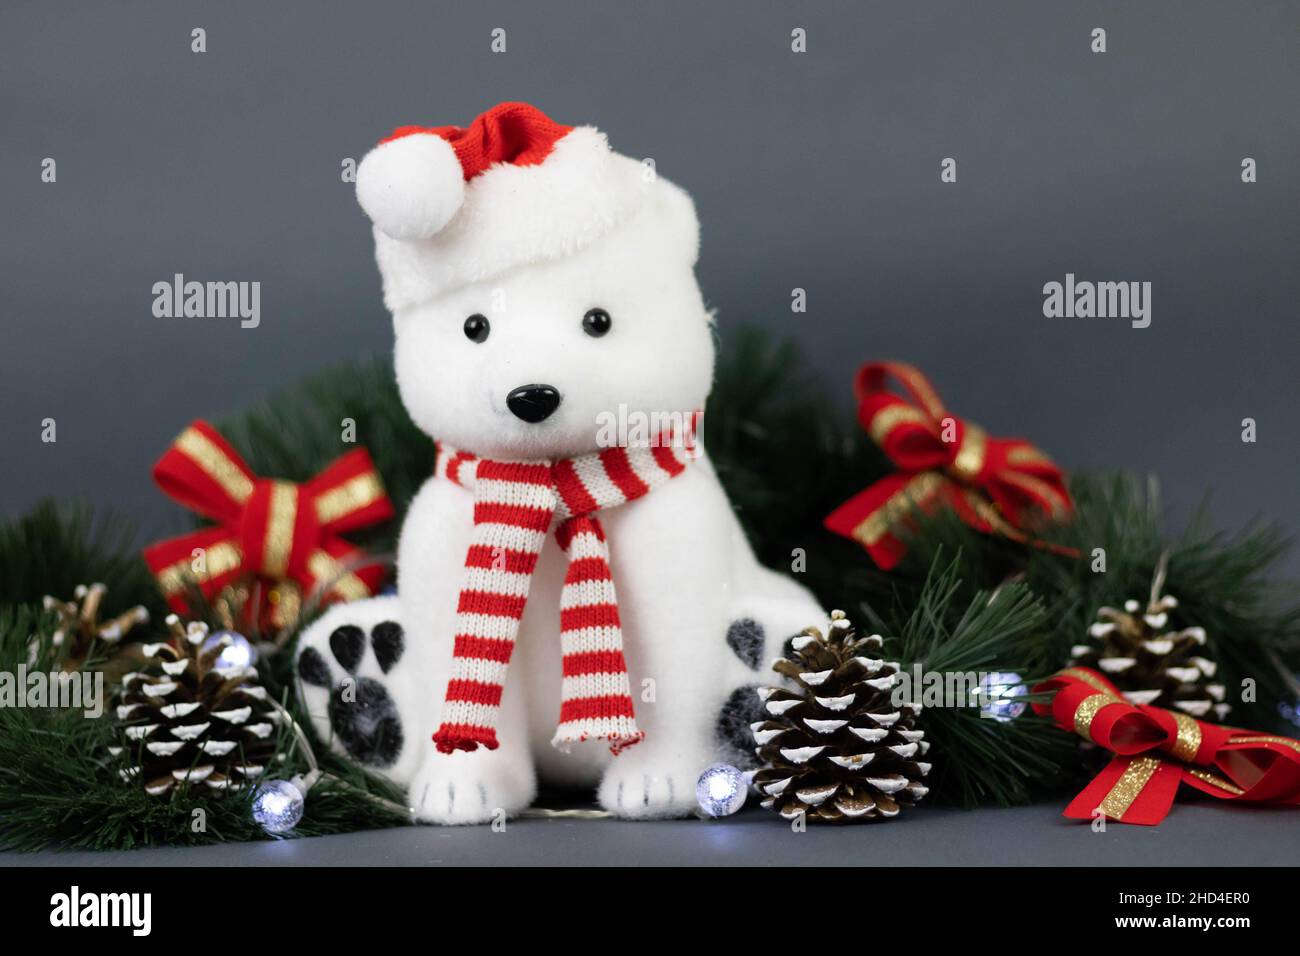 Un adorable ours en peluche blanc orné de décorations de Noël Banque D'Images